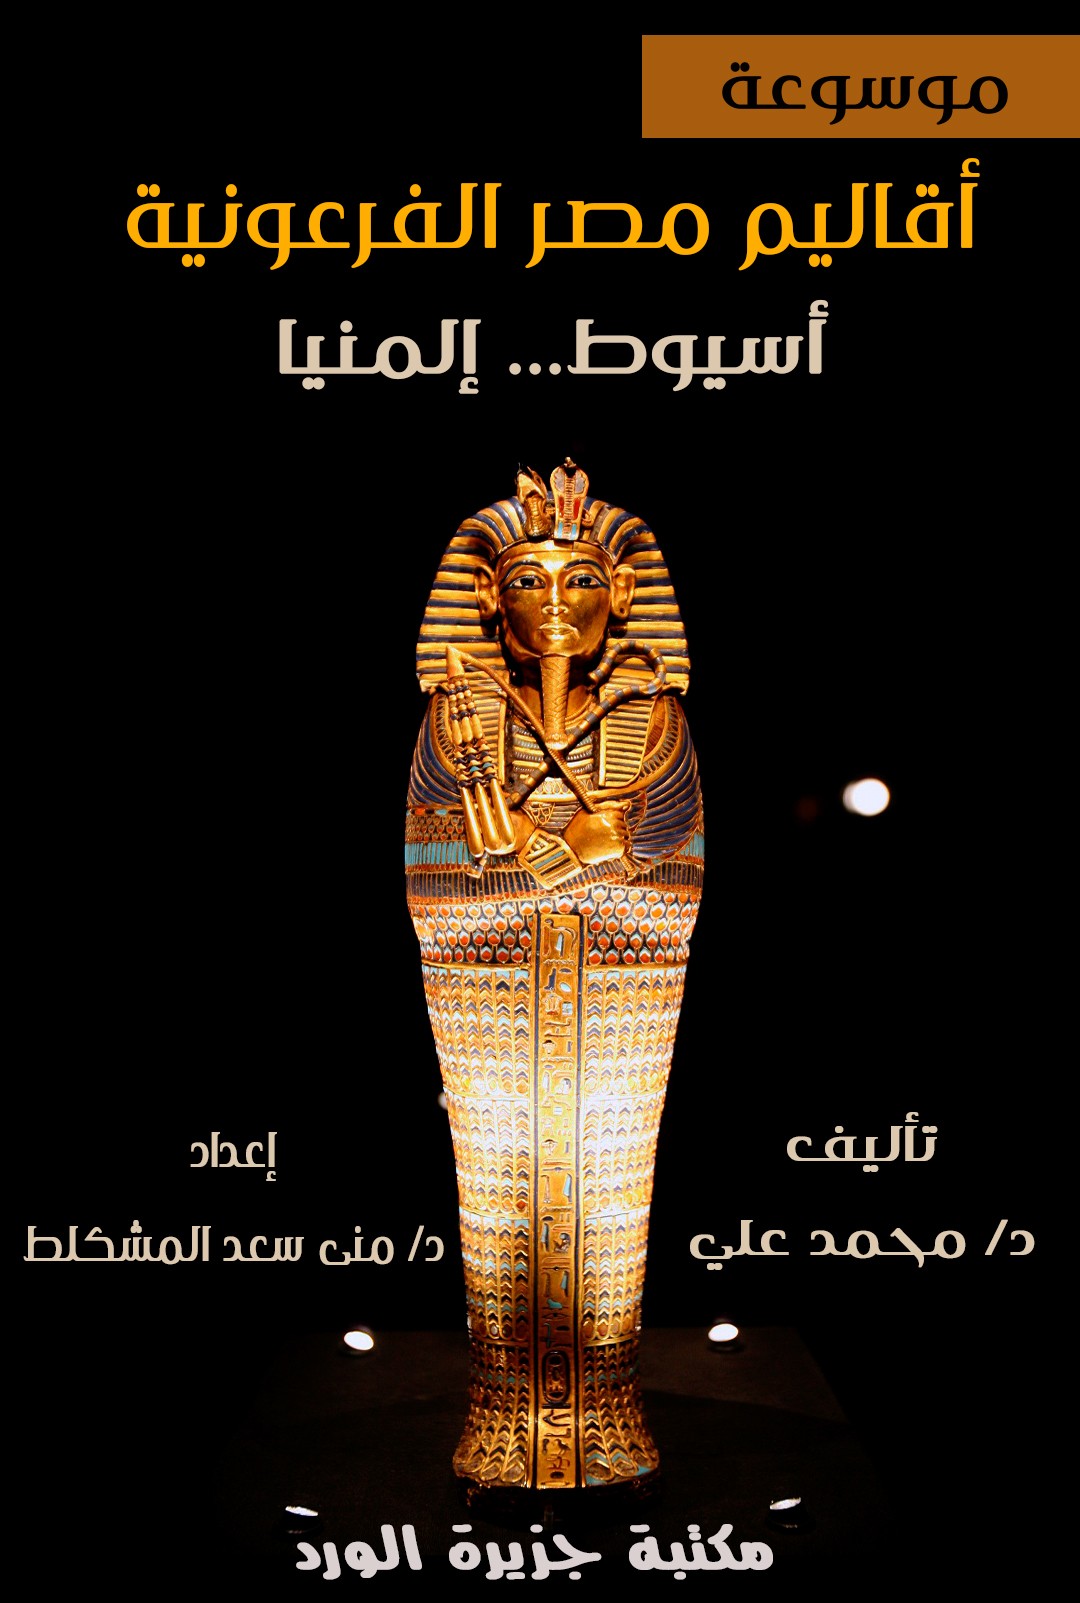 -أقاليم مصر الفرعونية -أسيوط .. المنيا